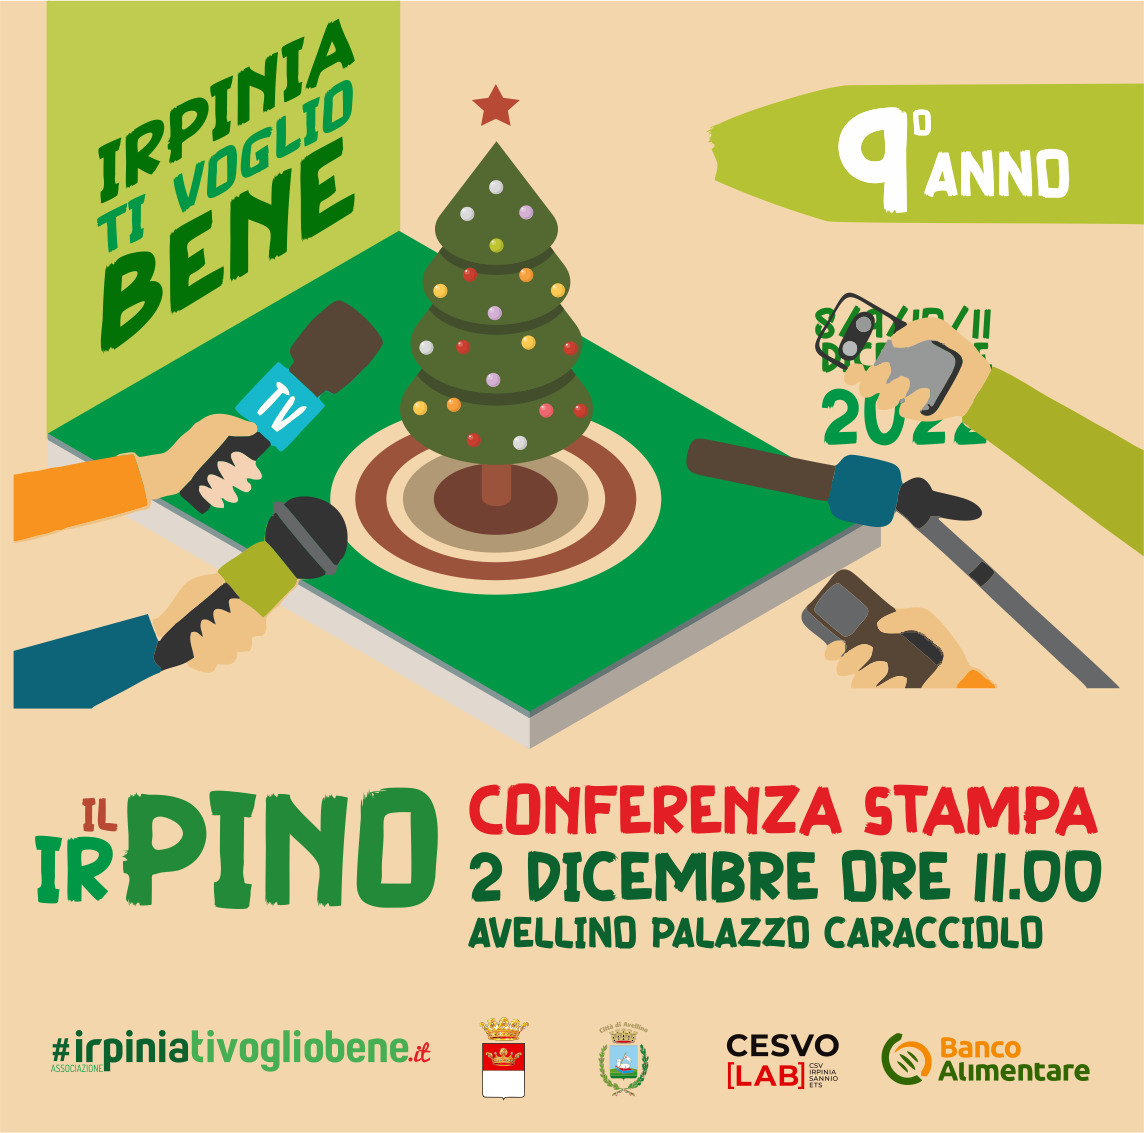 Torna il viaggio del “Pino Irpino”, dall’8 all’11 dicembre la nona edizione della carovana di solidarietà